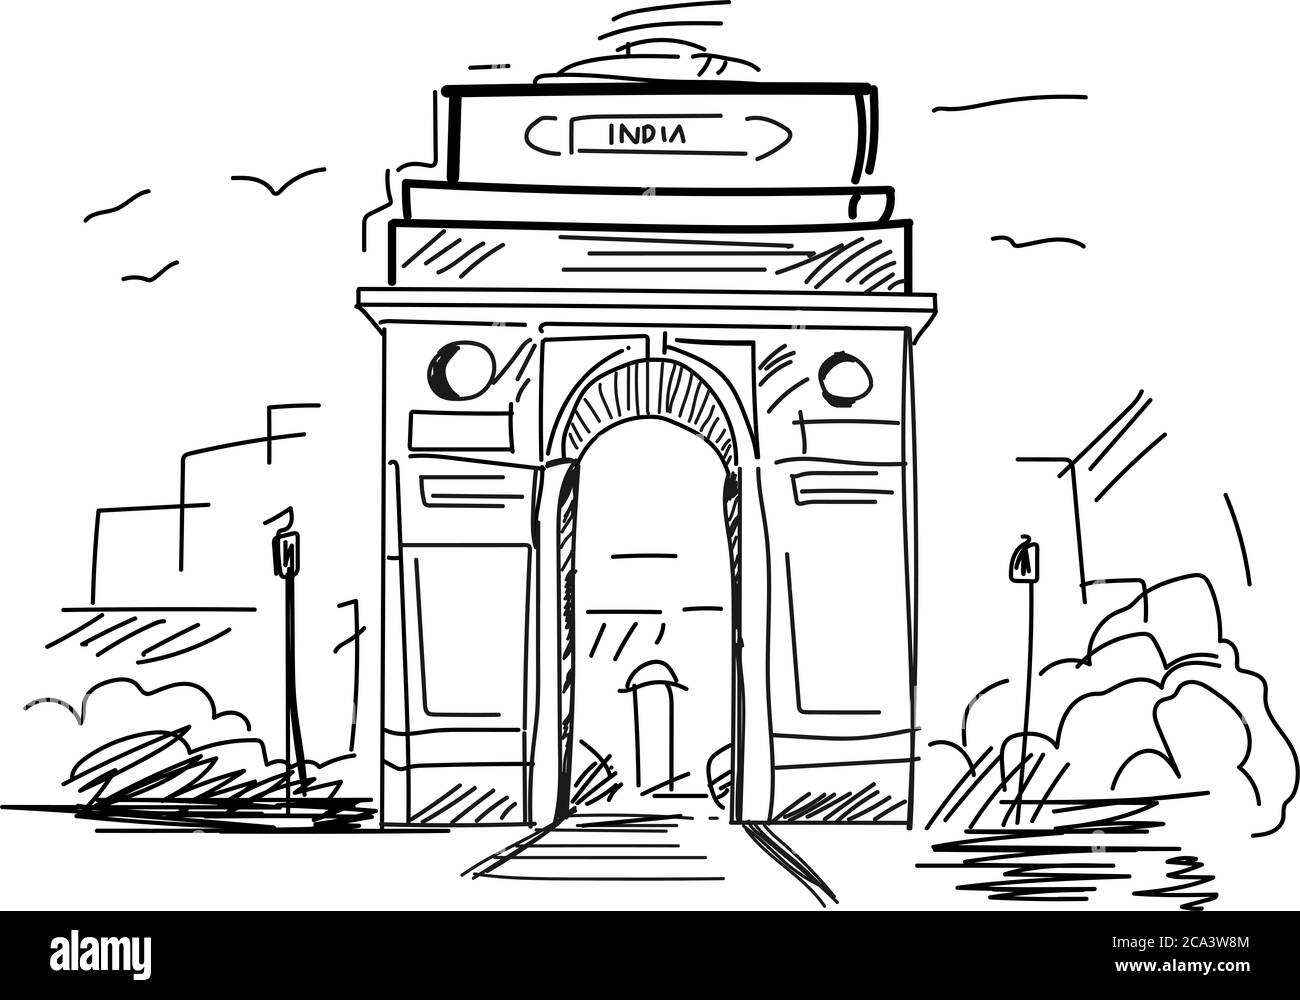 Croquis au crayon dessiné à la main de la porte de l'Inde à New Delhi en illustration vectorielle. Arcade triomphale. Mémorial de guerre emblématique. Plat. Graphique. Conception. 3D. Art Banque D'Images